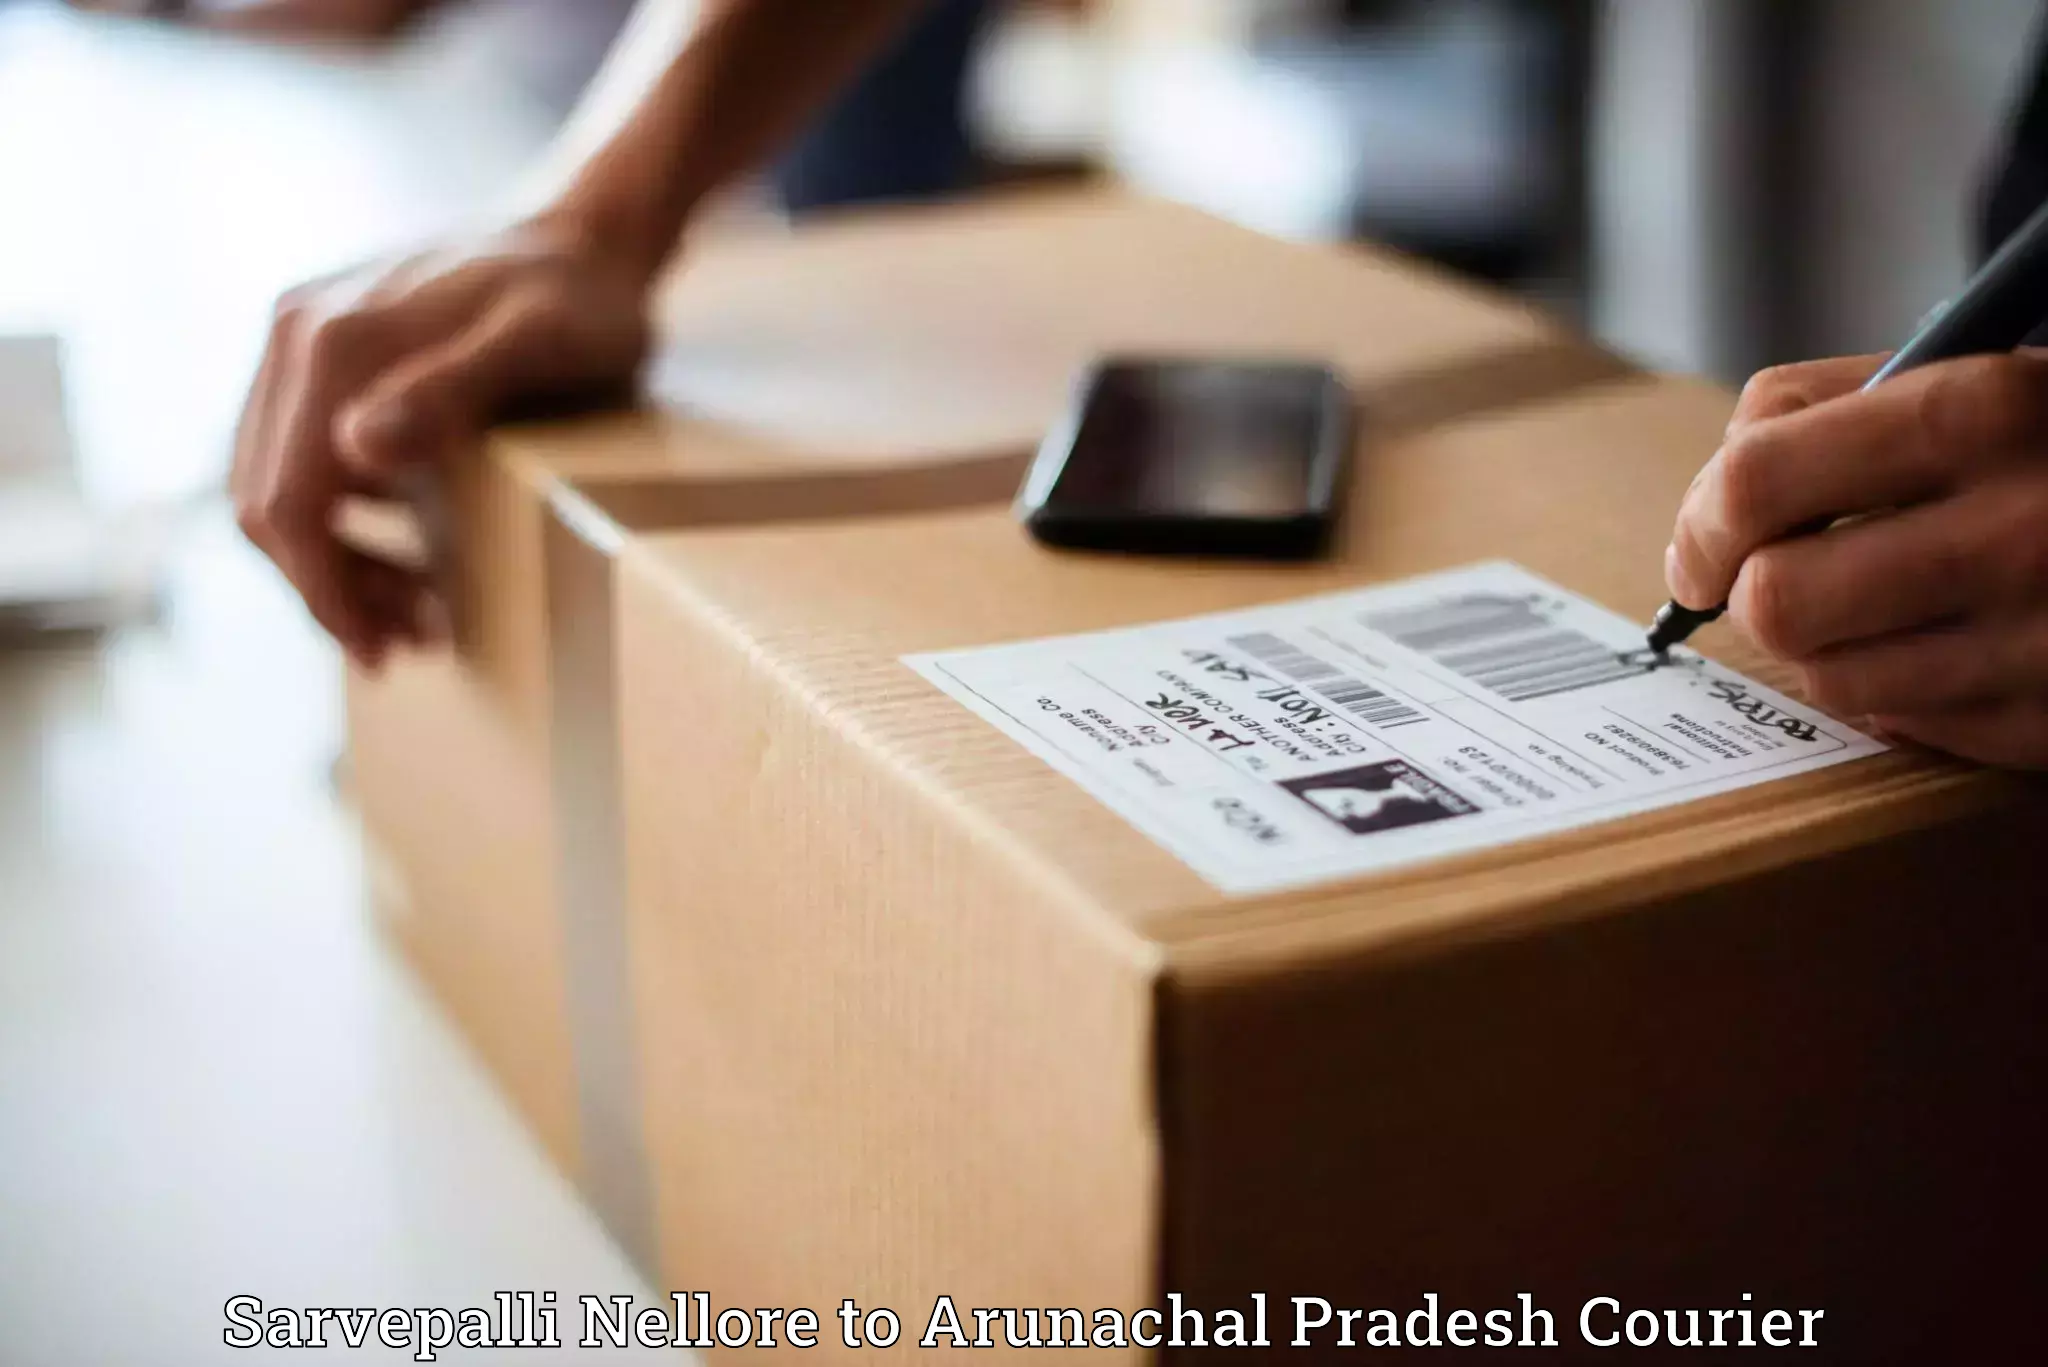 Dynamic courier services Sarvepalli Nellore to Arunachal Pradesh